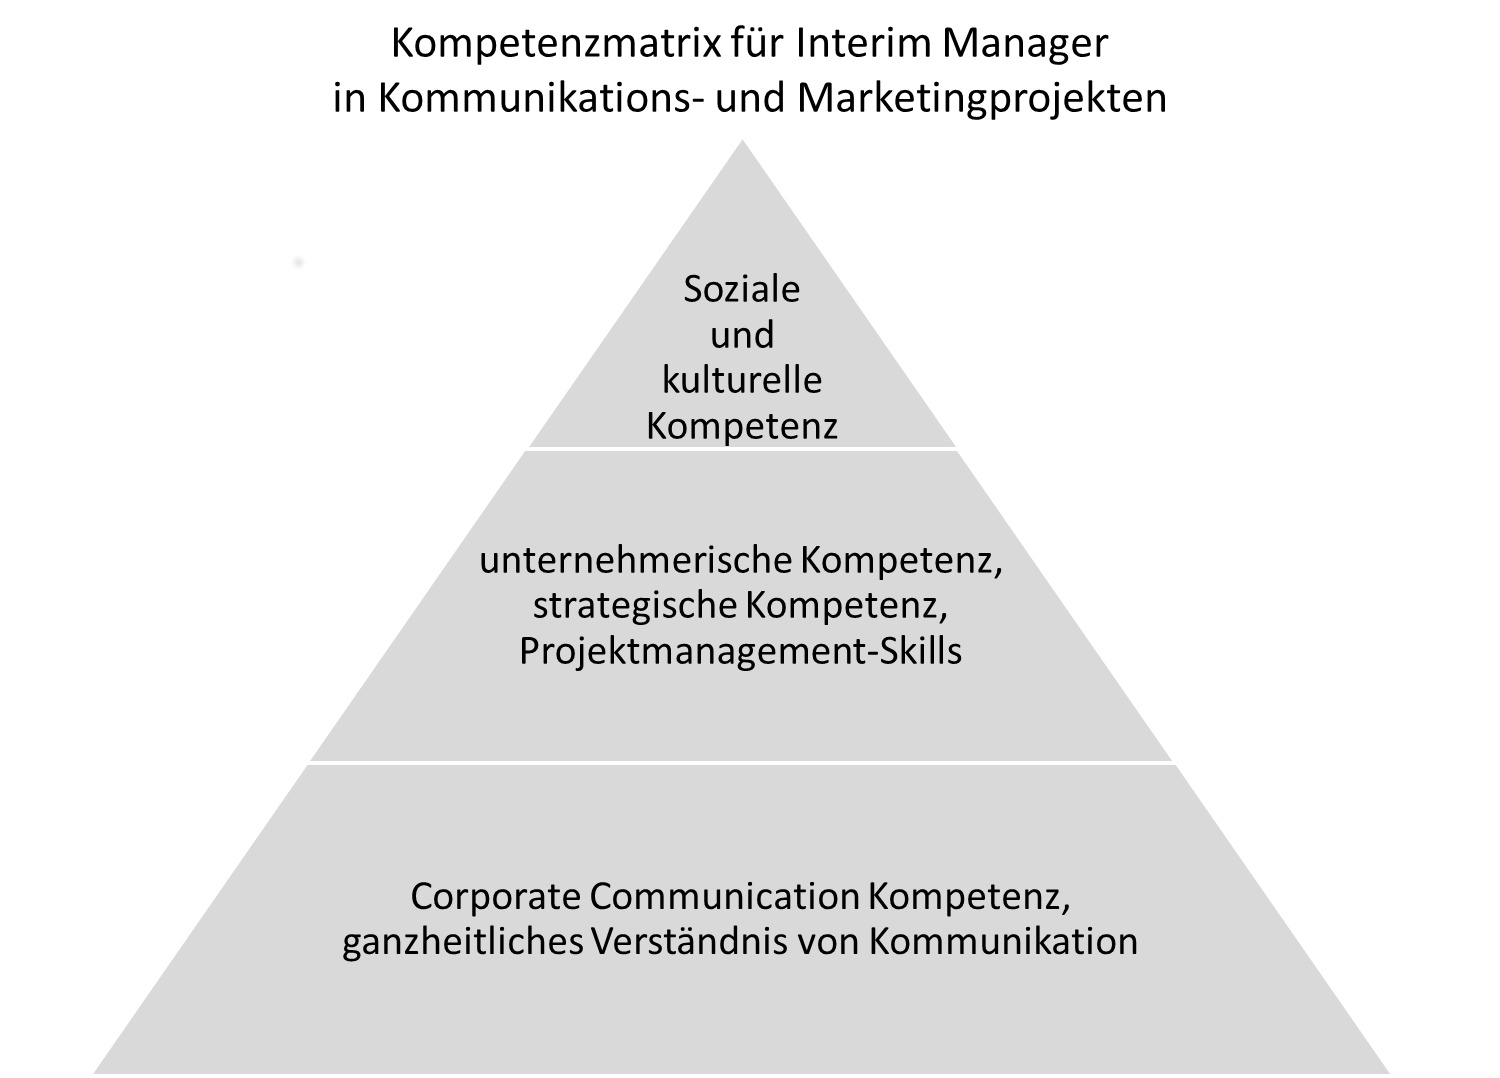 Schaubild Kompetenzmatrix von Interim Managern